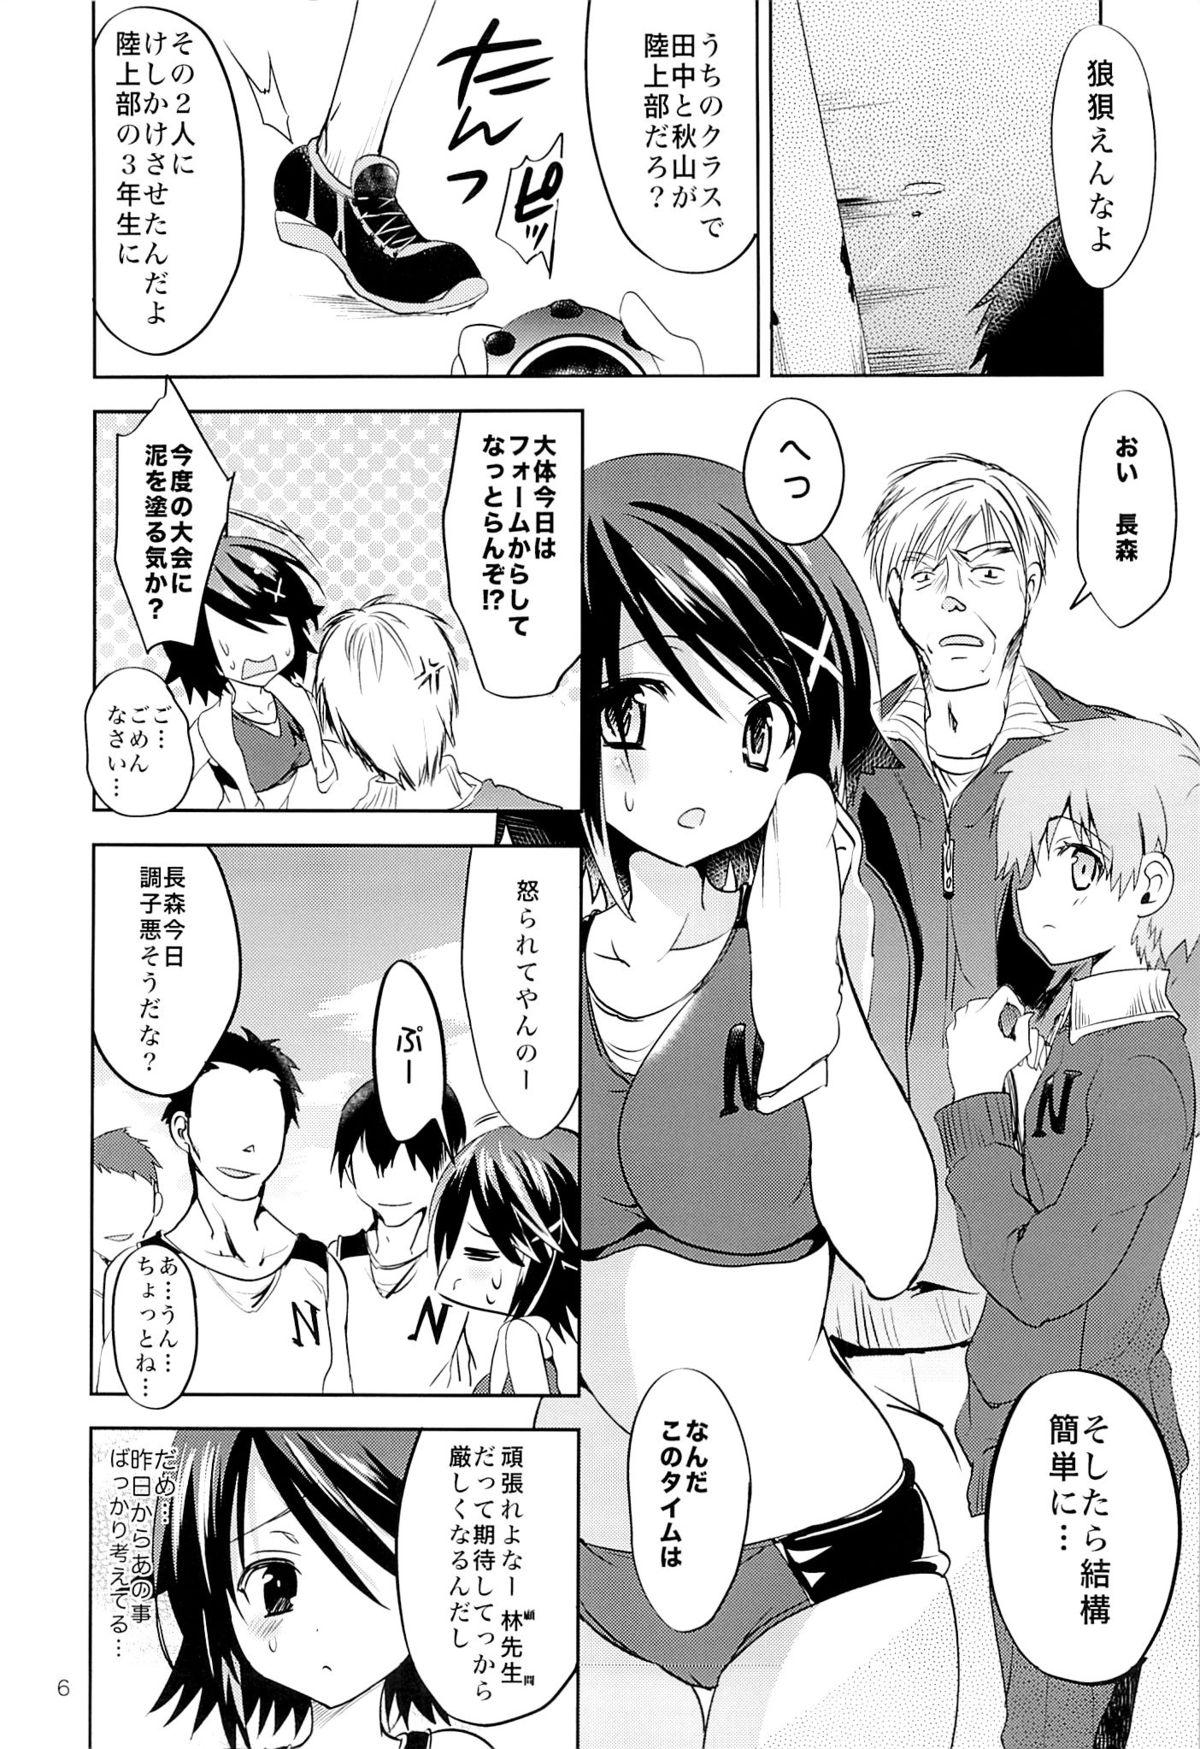 Rabo Gakkou de Seishun! 8 3way - Page 5